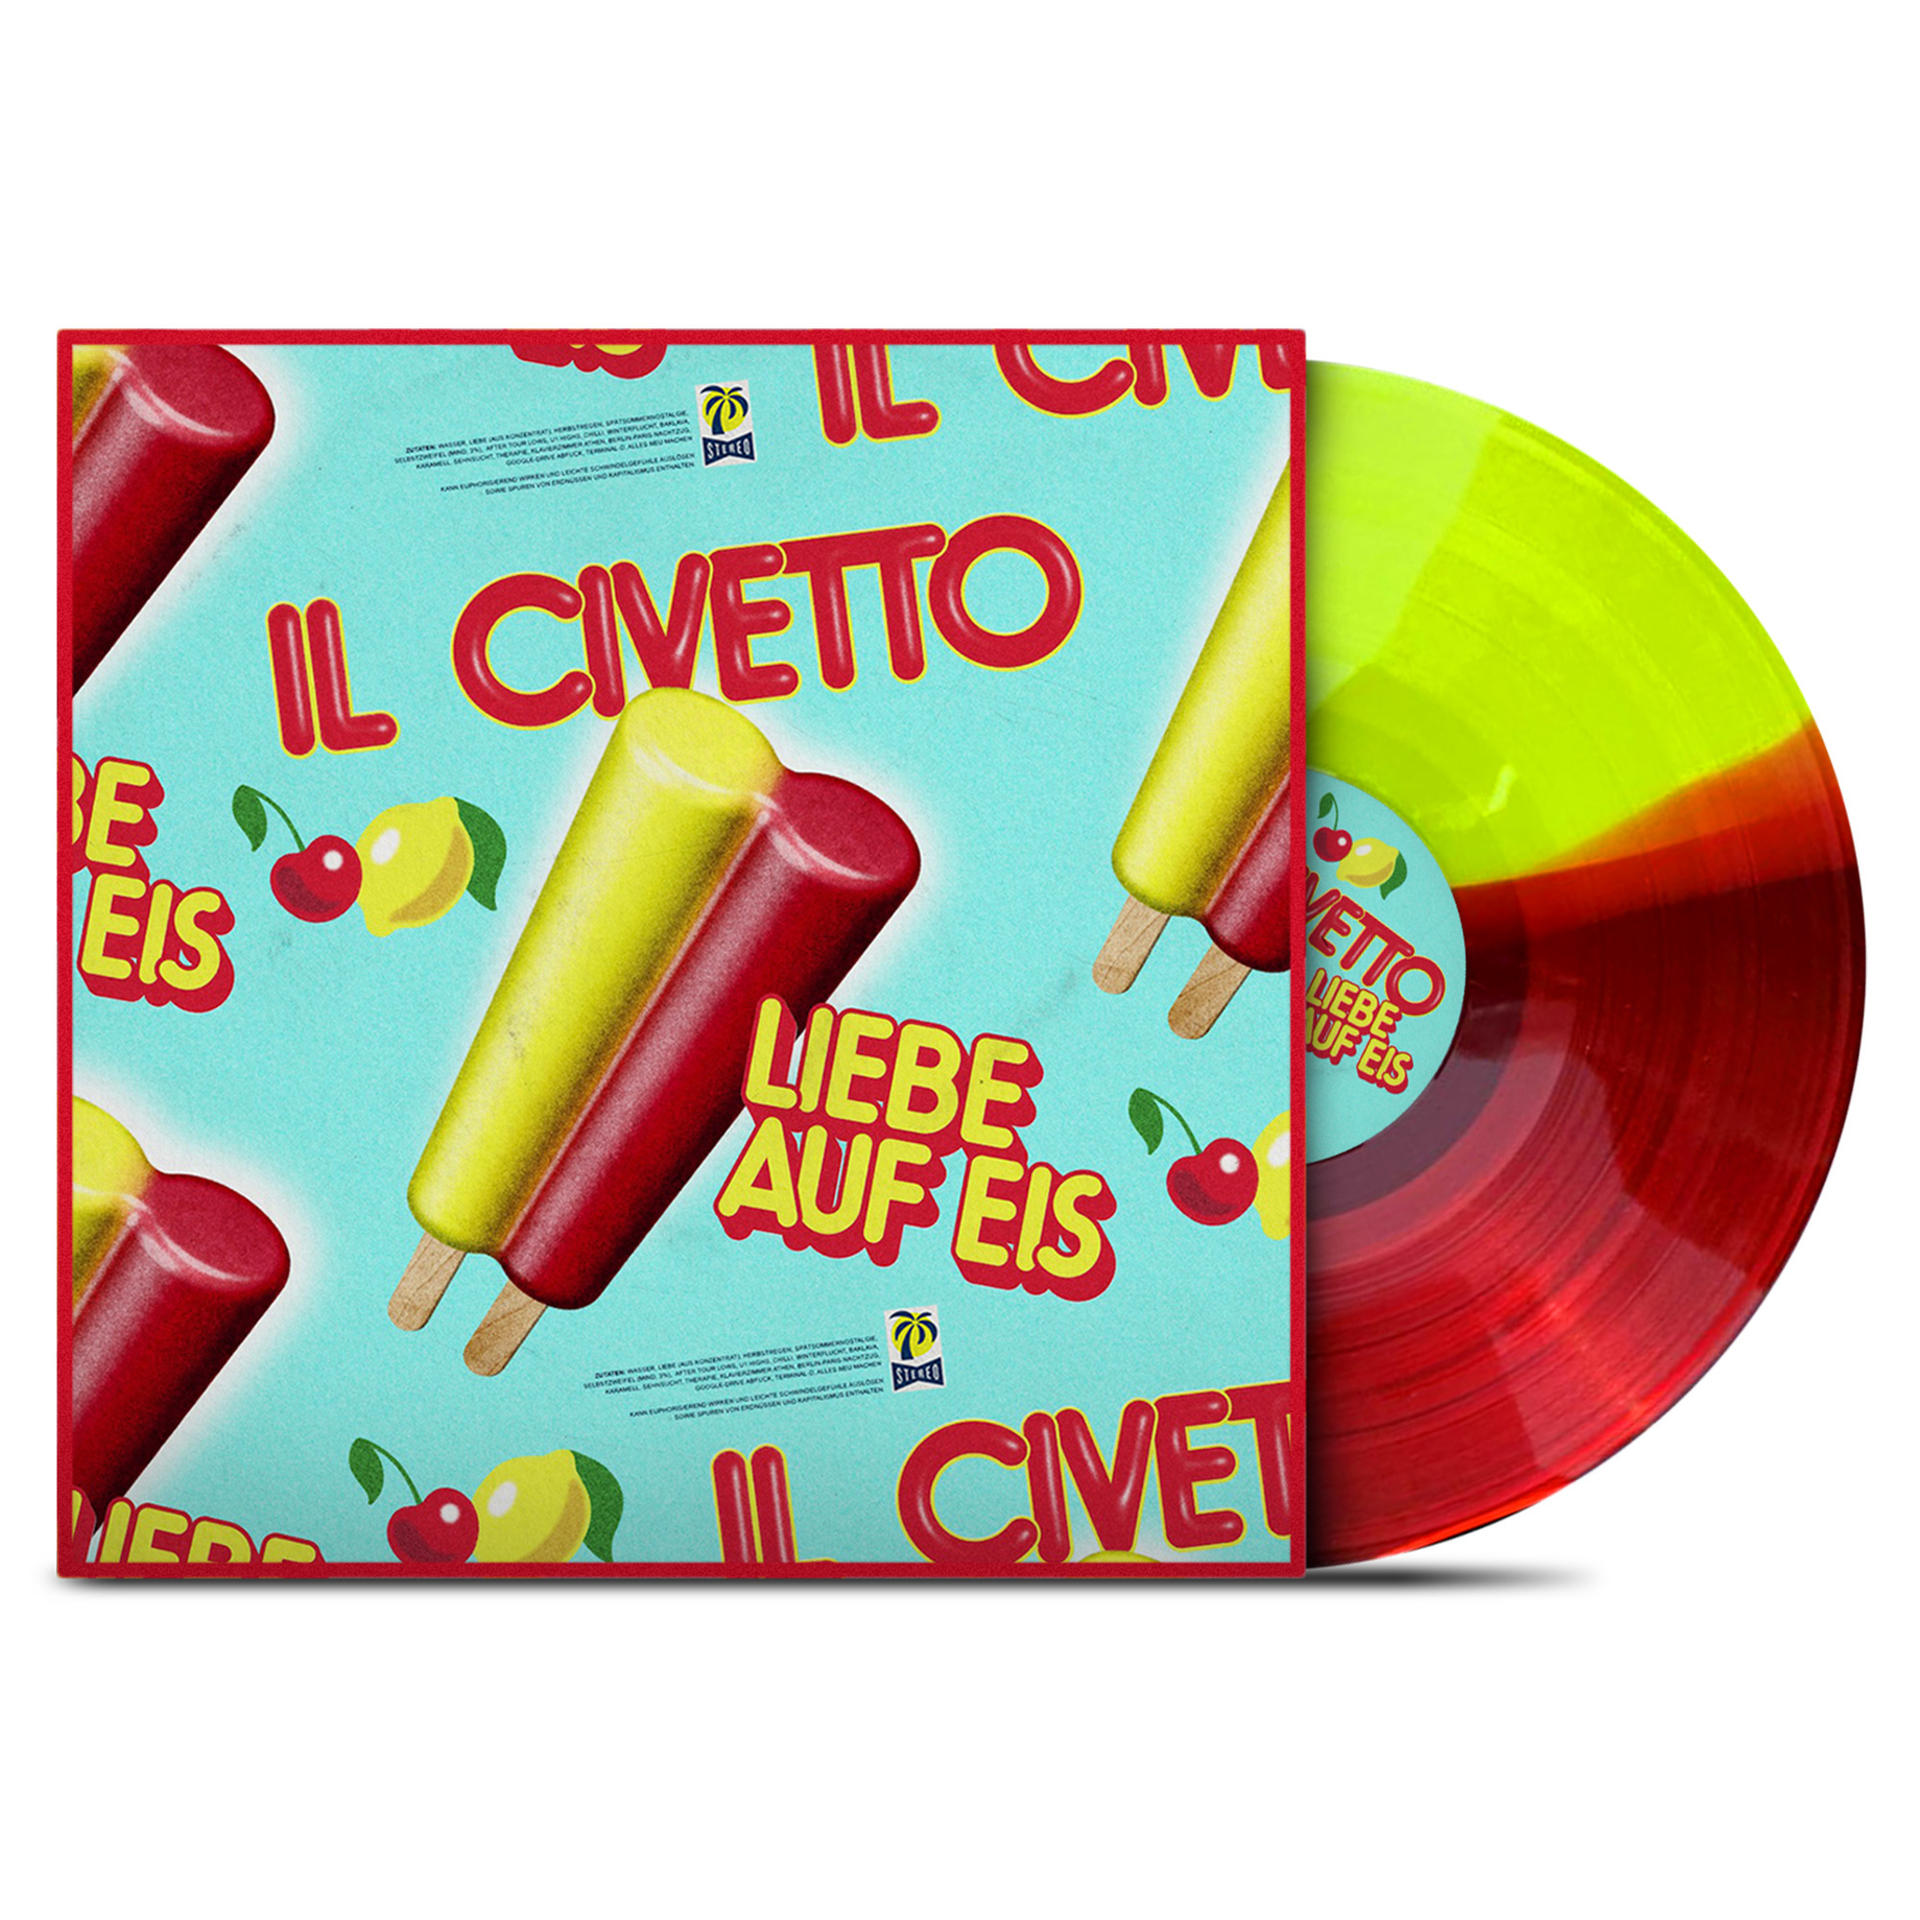 Il Civetto - Liebe auf (Vinyl) - Eis